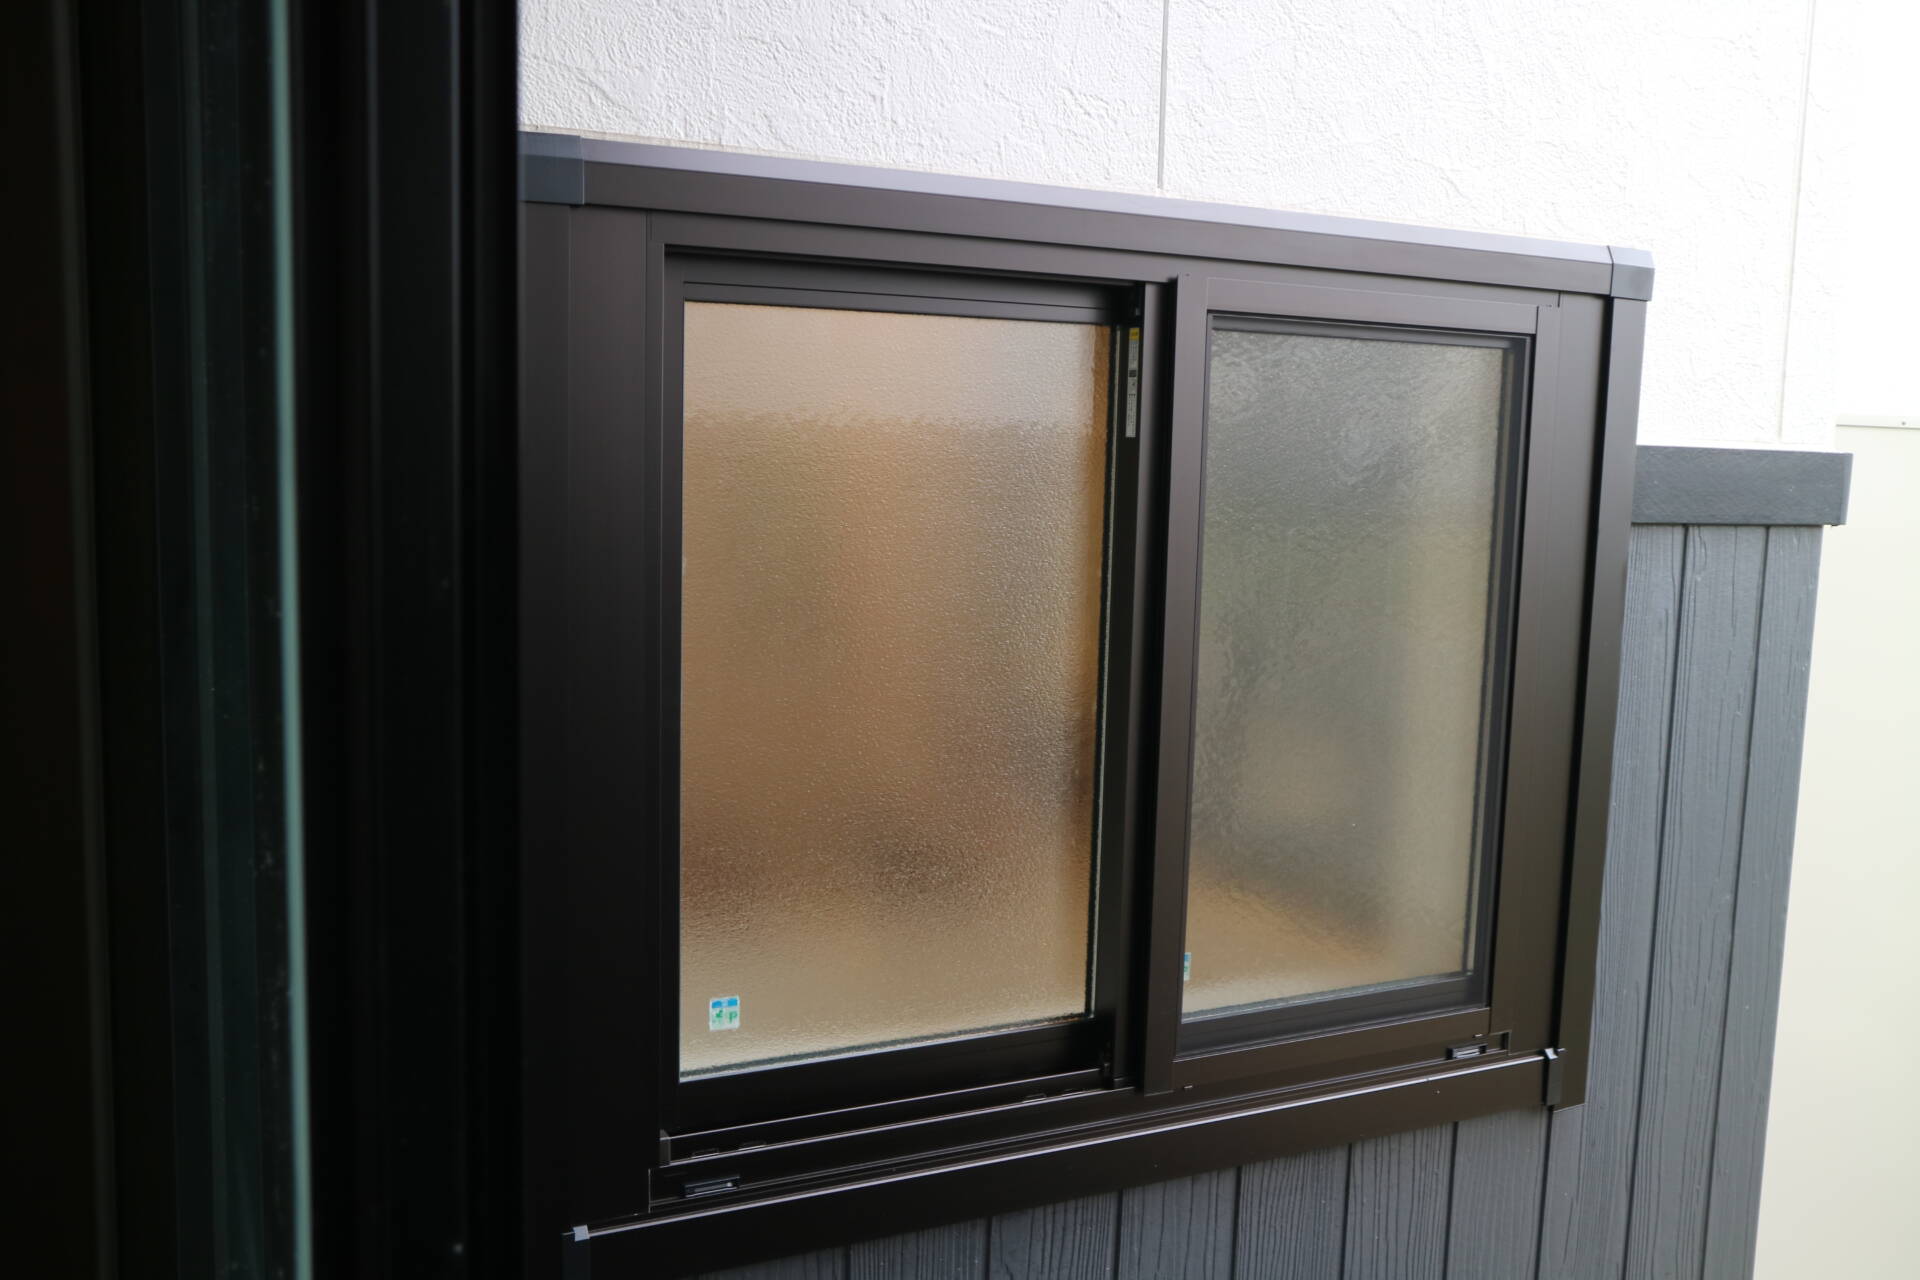 ・（戸建住宅）窓リフォーム（カバー工法）事例